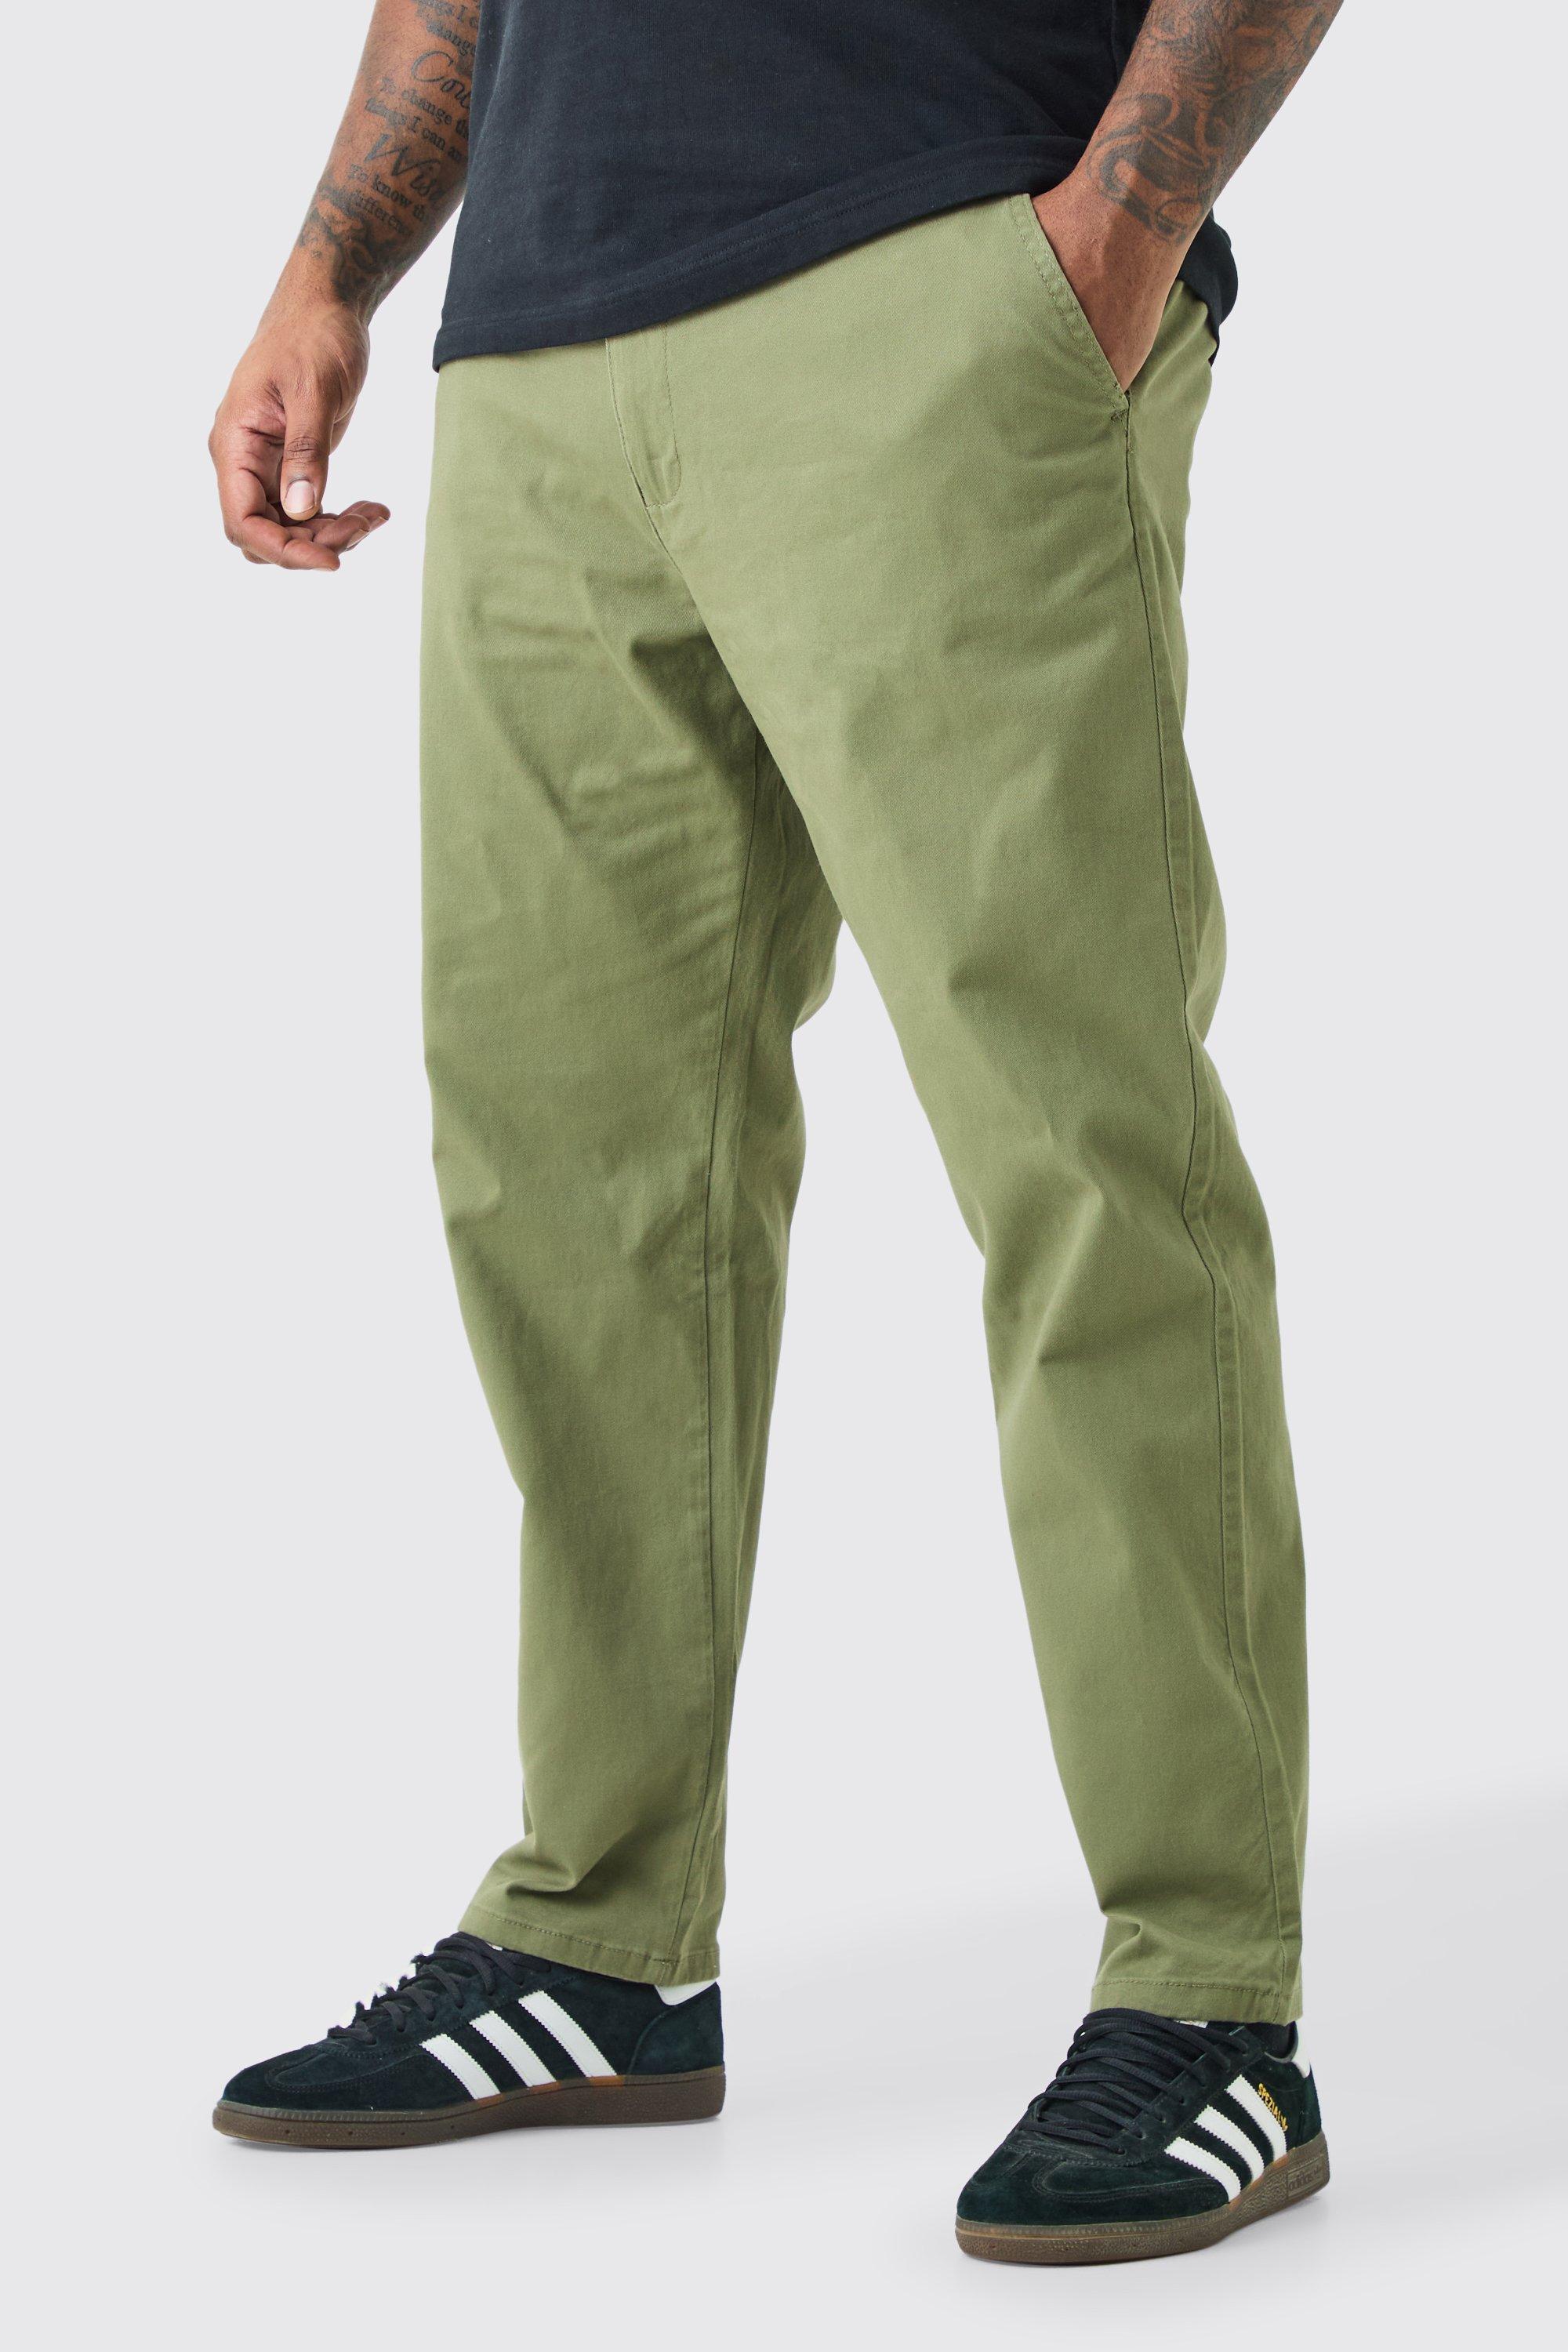 Image of Pantaloni Chino Plus Size Slim Fit con vita fissa, Verde